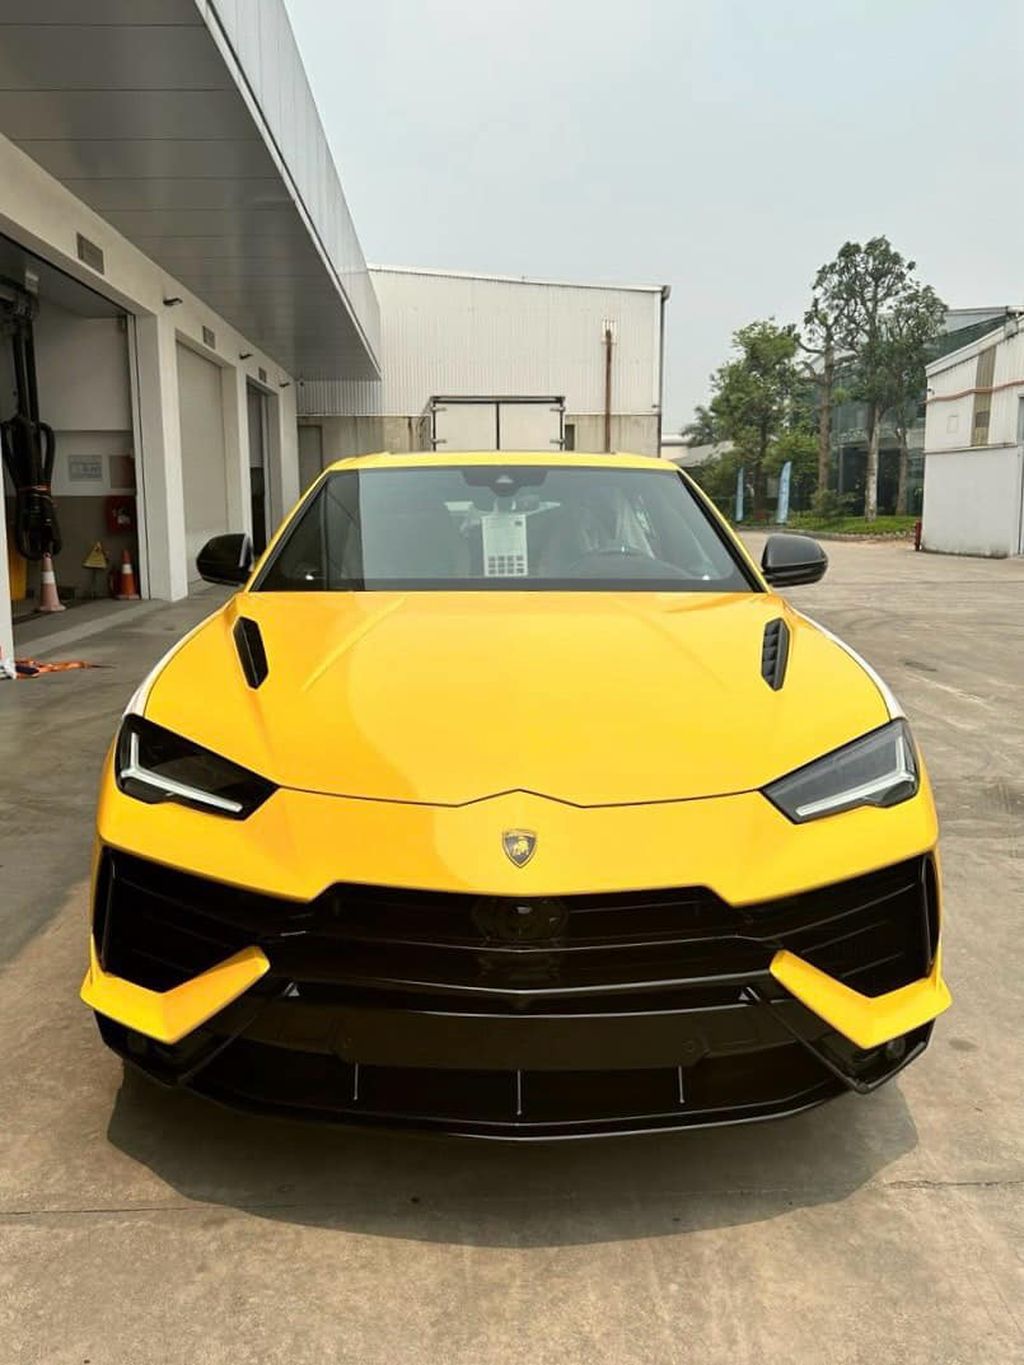 Youtuber Huấn “Hoa Hồng” chơi lớn tậu Lamborghini Urus S hơn 16 tỷ đồng ?